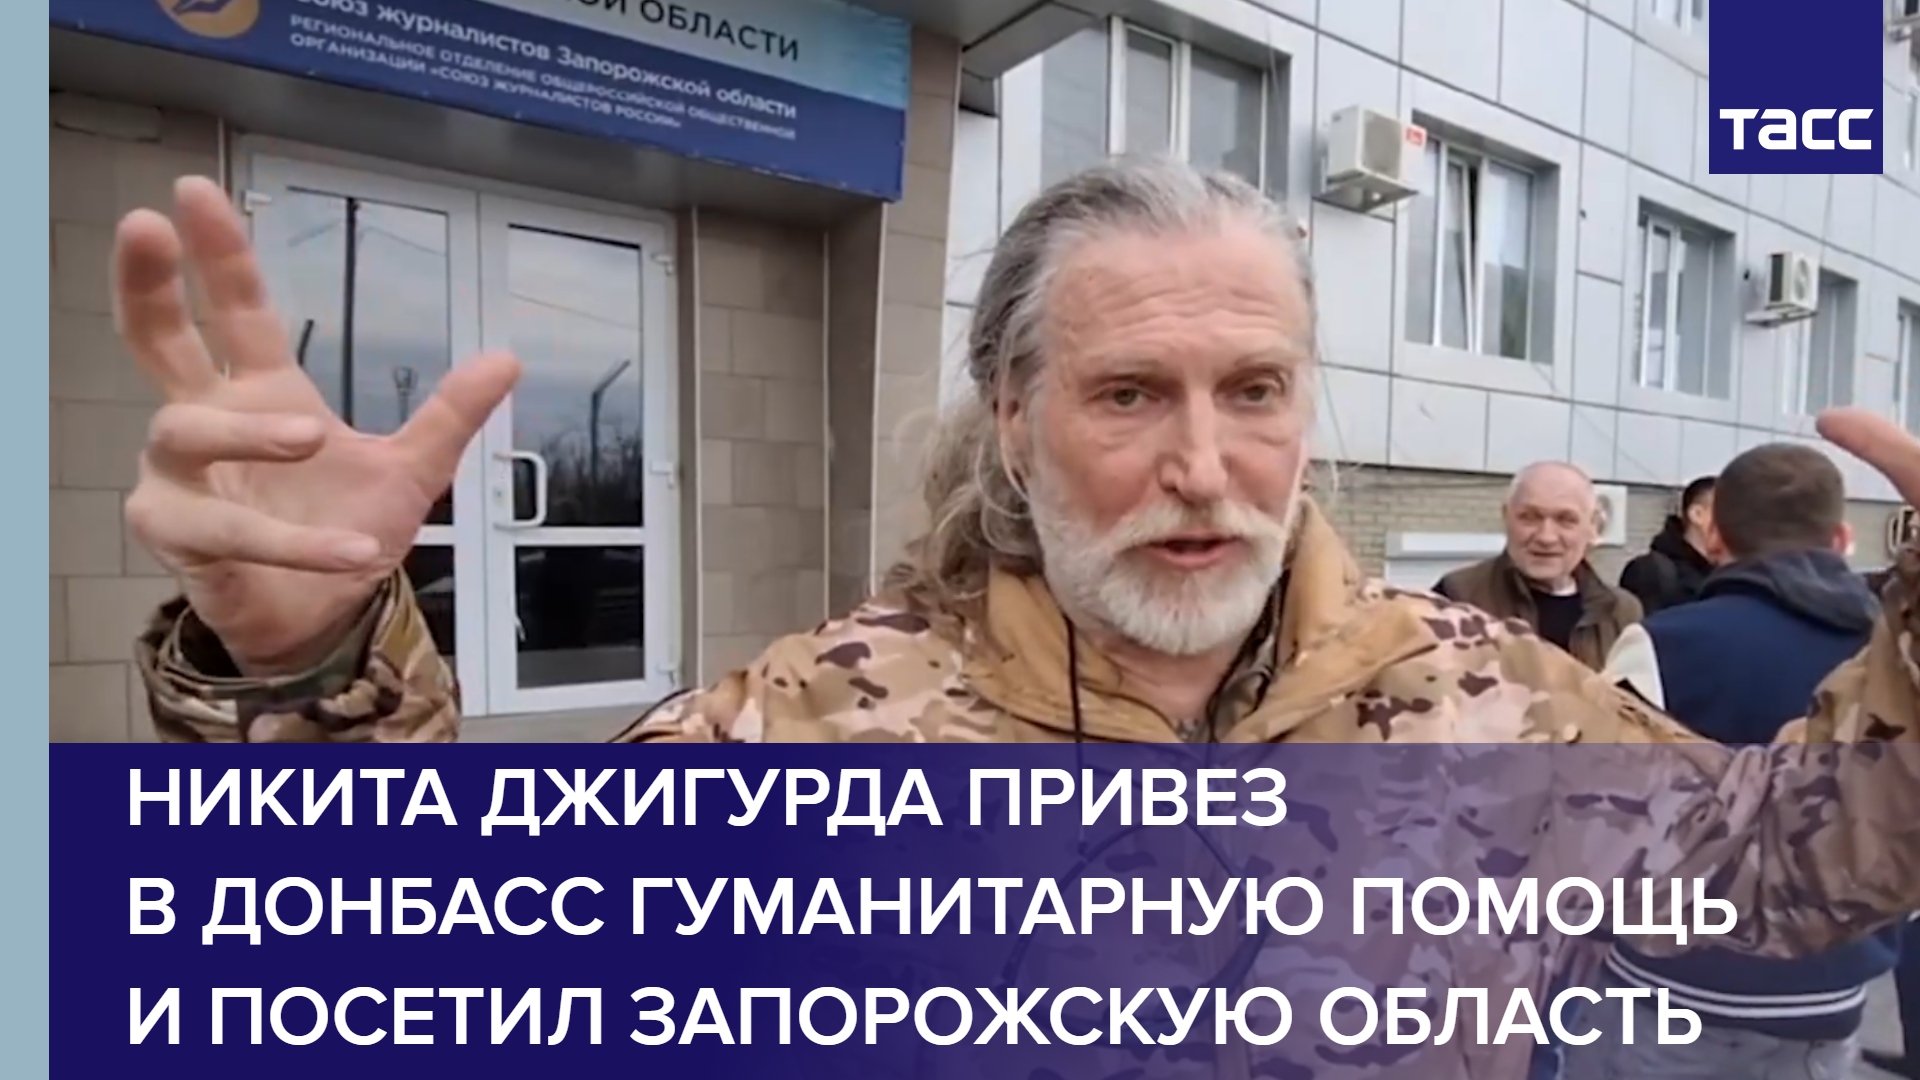 Никита Джигурда привез в Донбасс гуманитарную помощь и посетил Запорожскую область